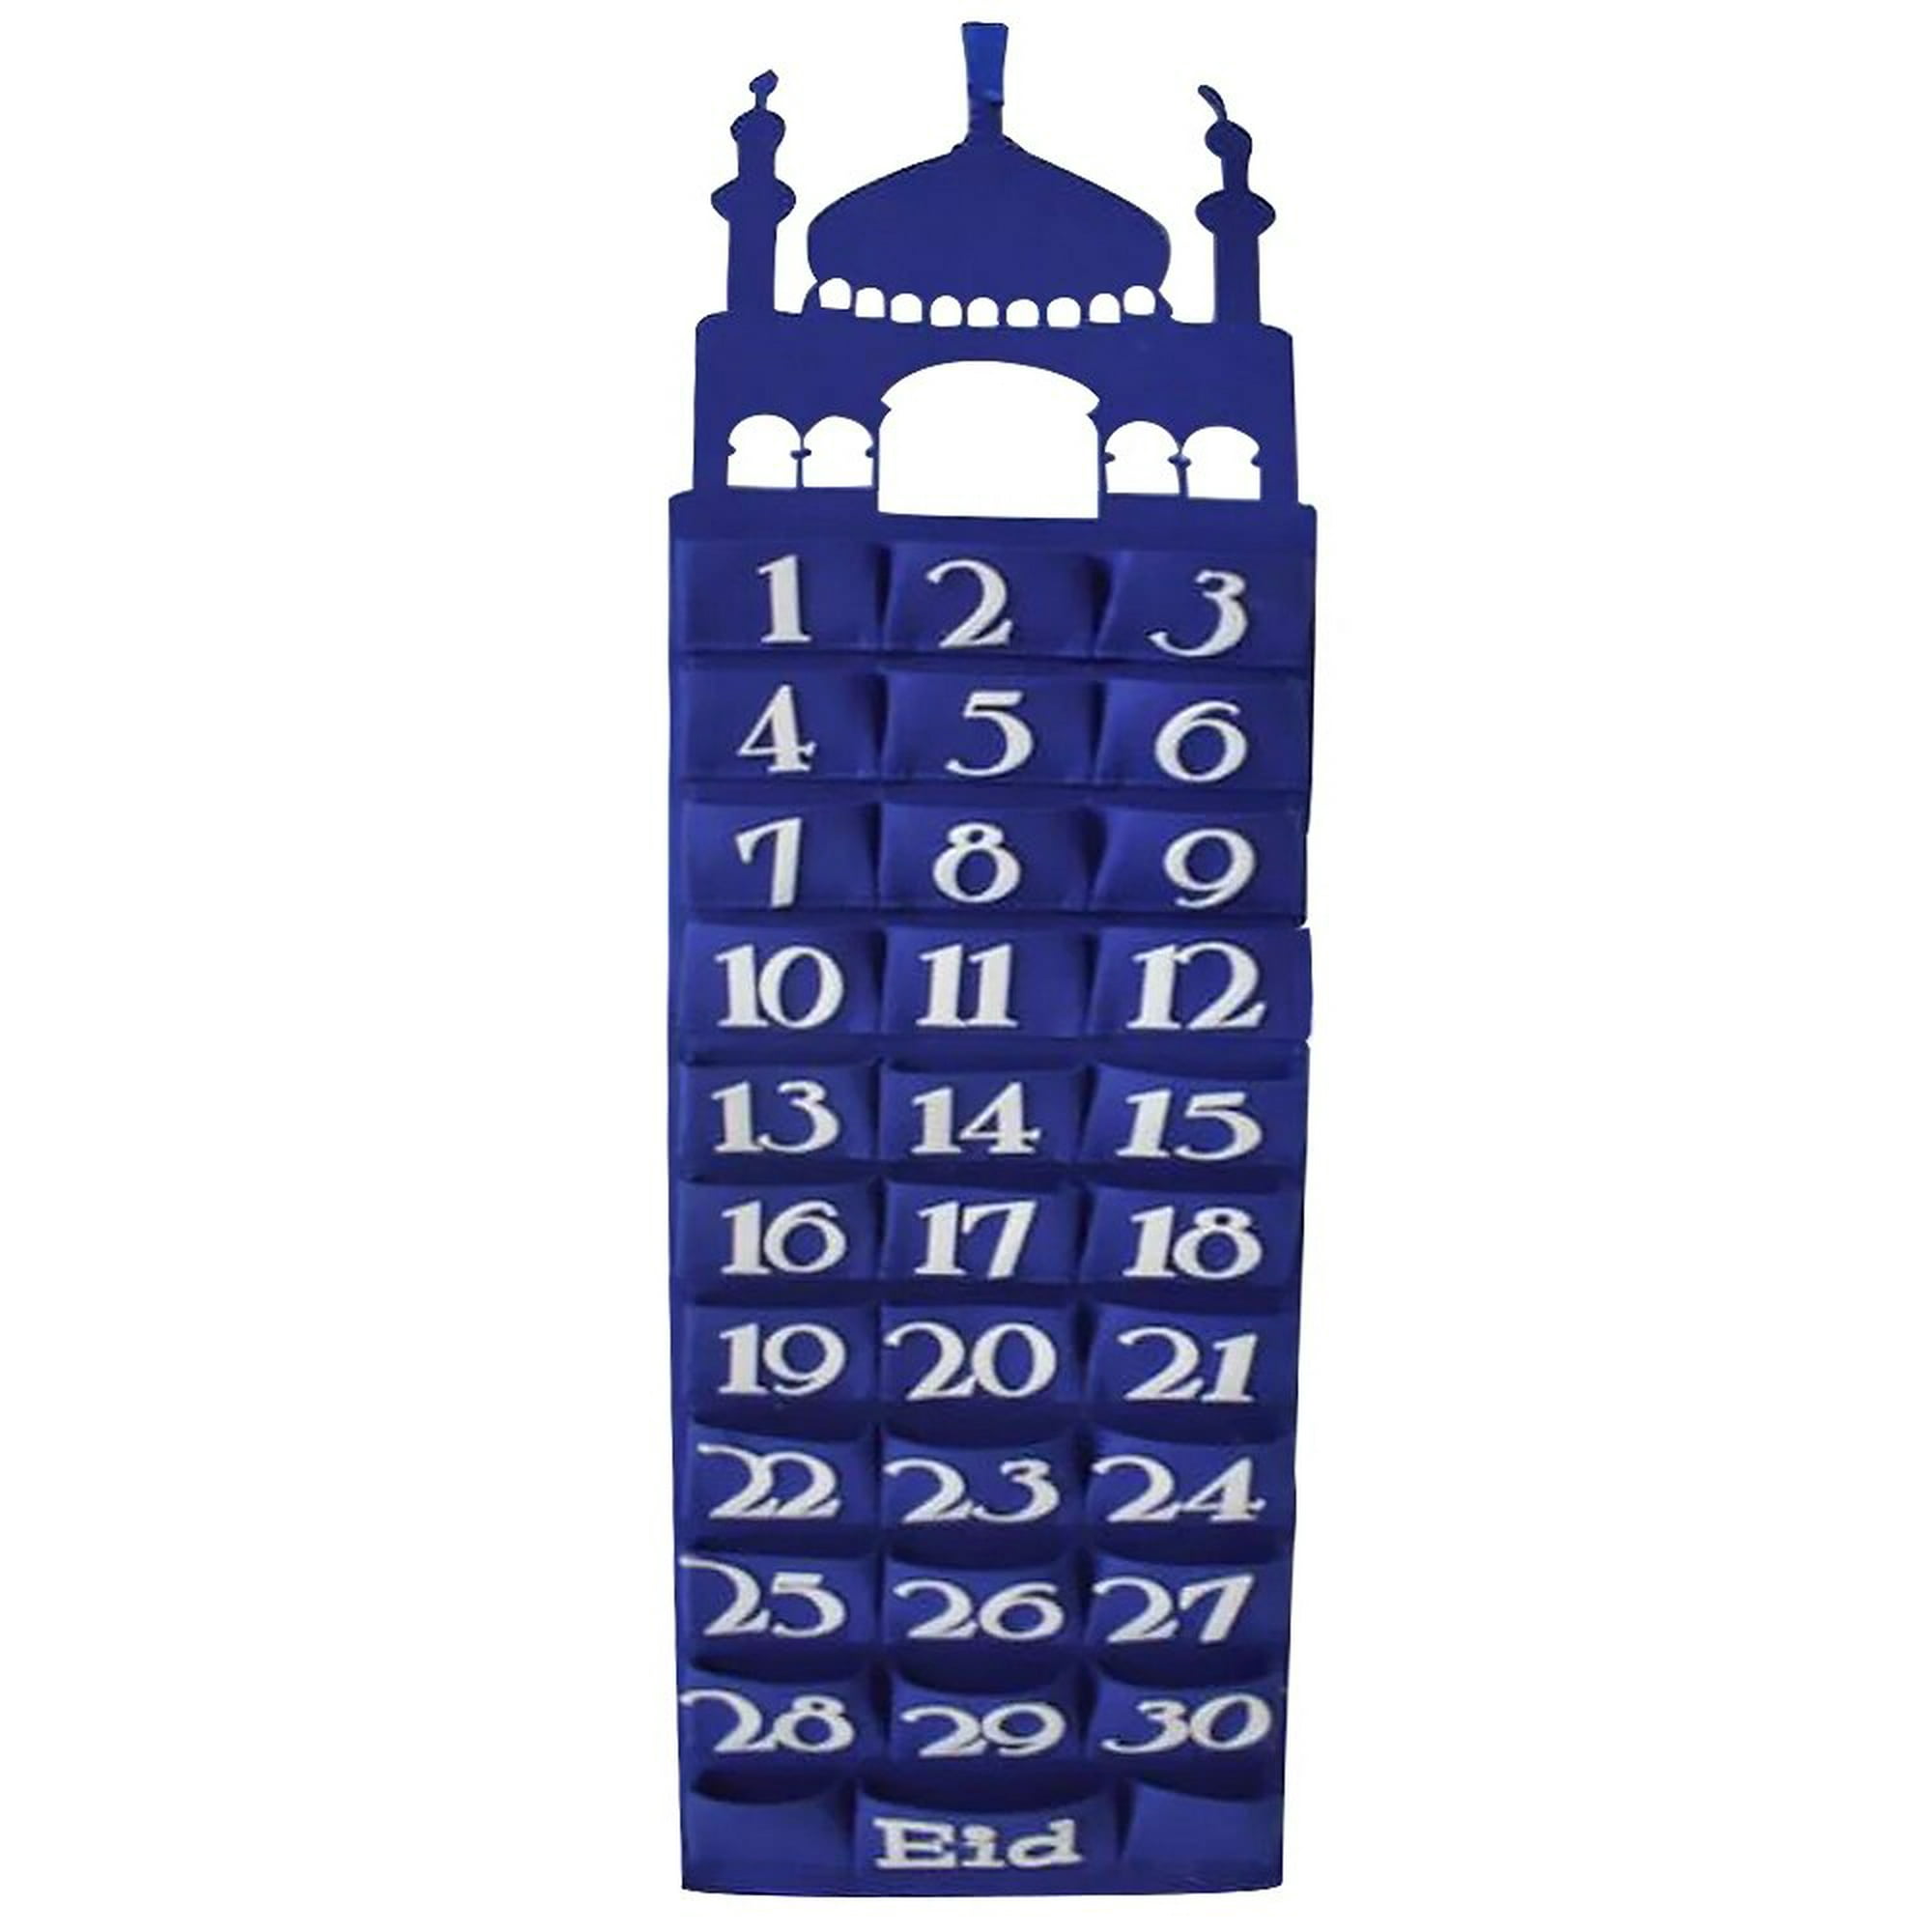 Calendario de ramadán de fieltro DIY Eid Mubarak con bolsillo para niños,  regalos, calendario de cuenta